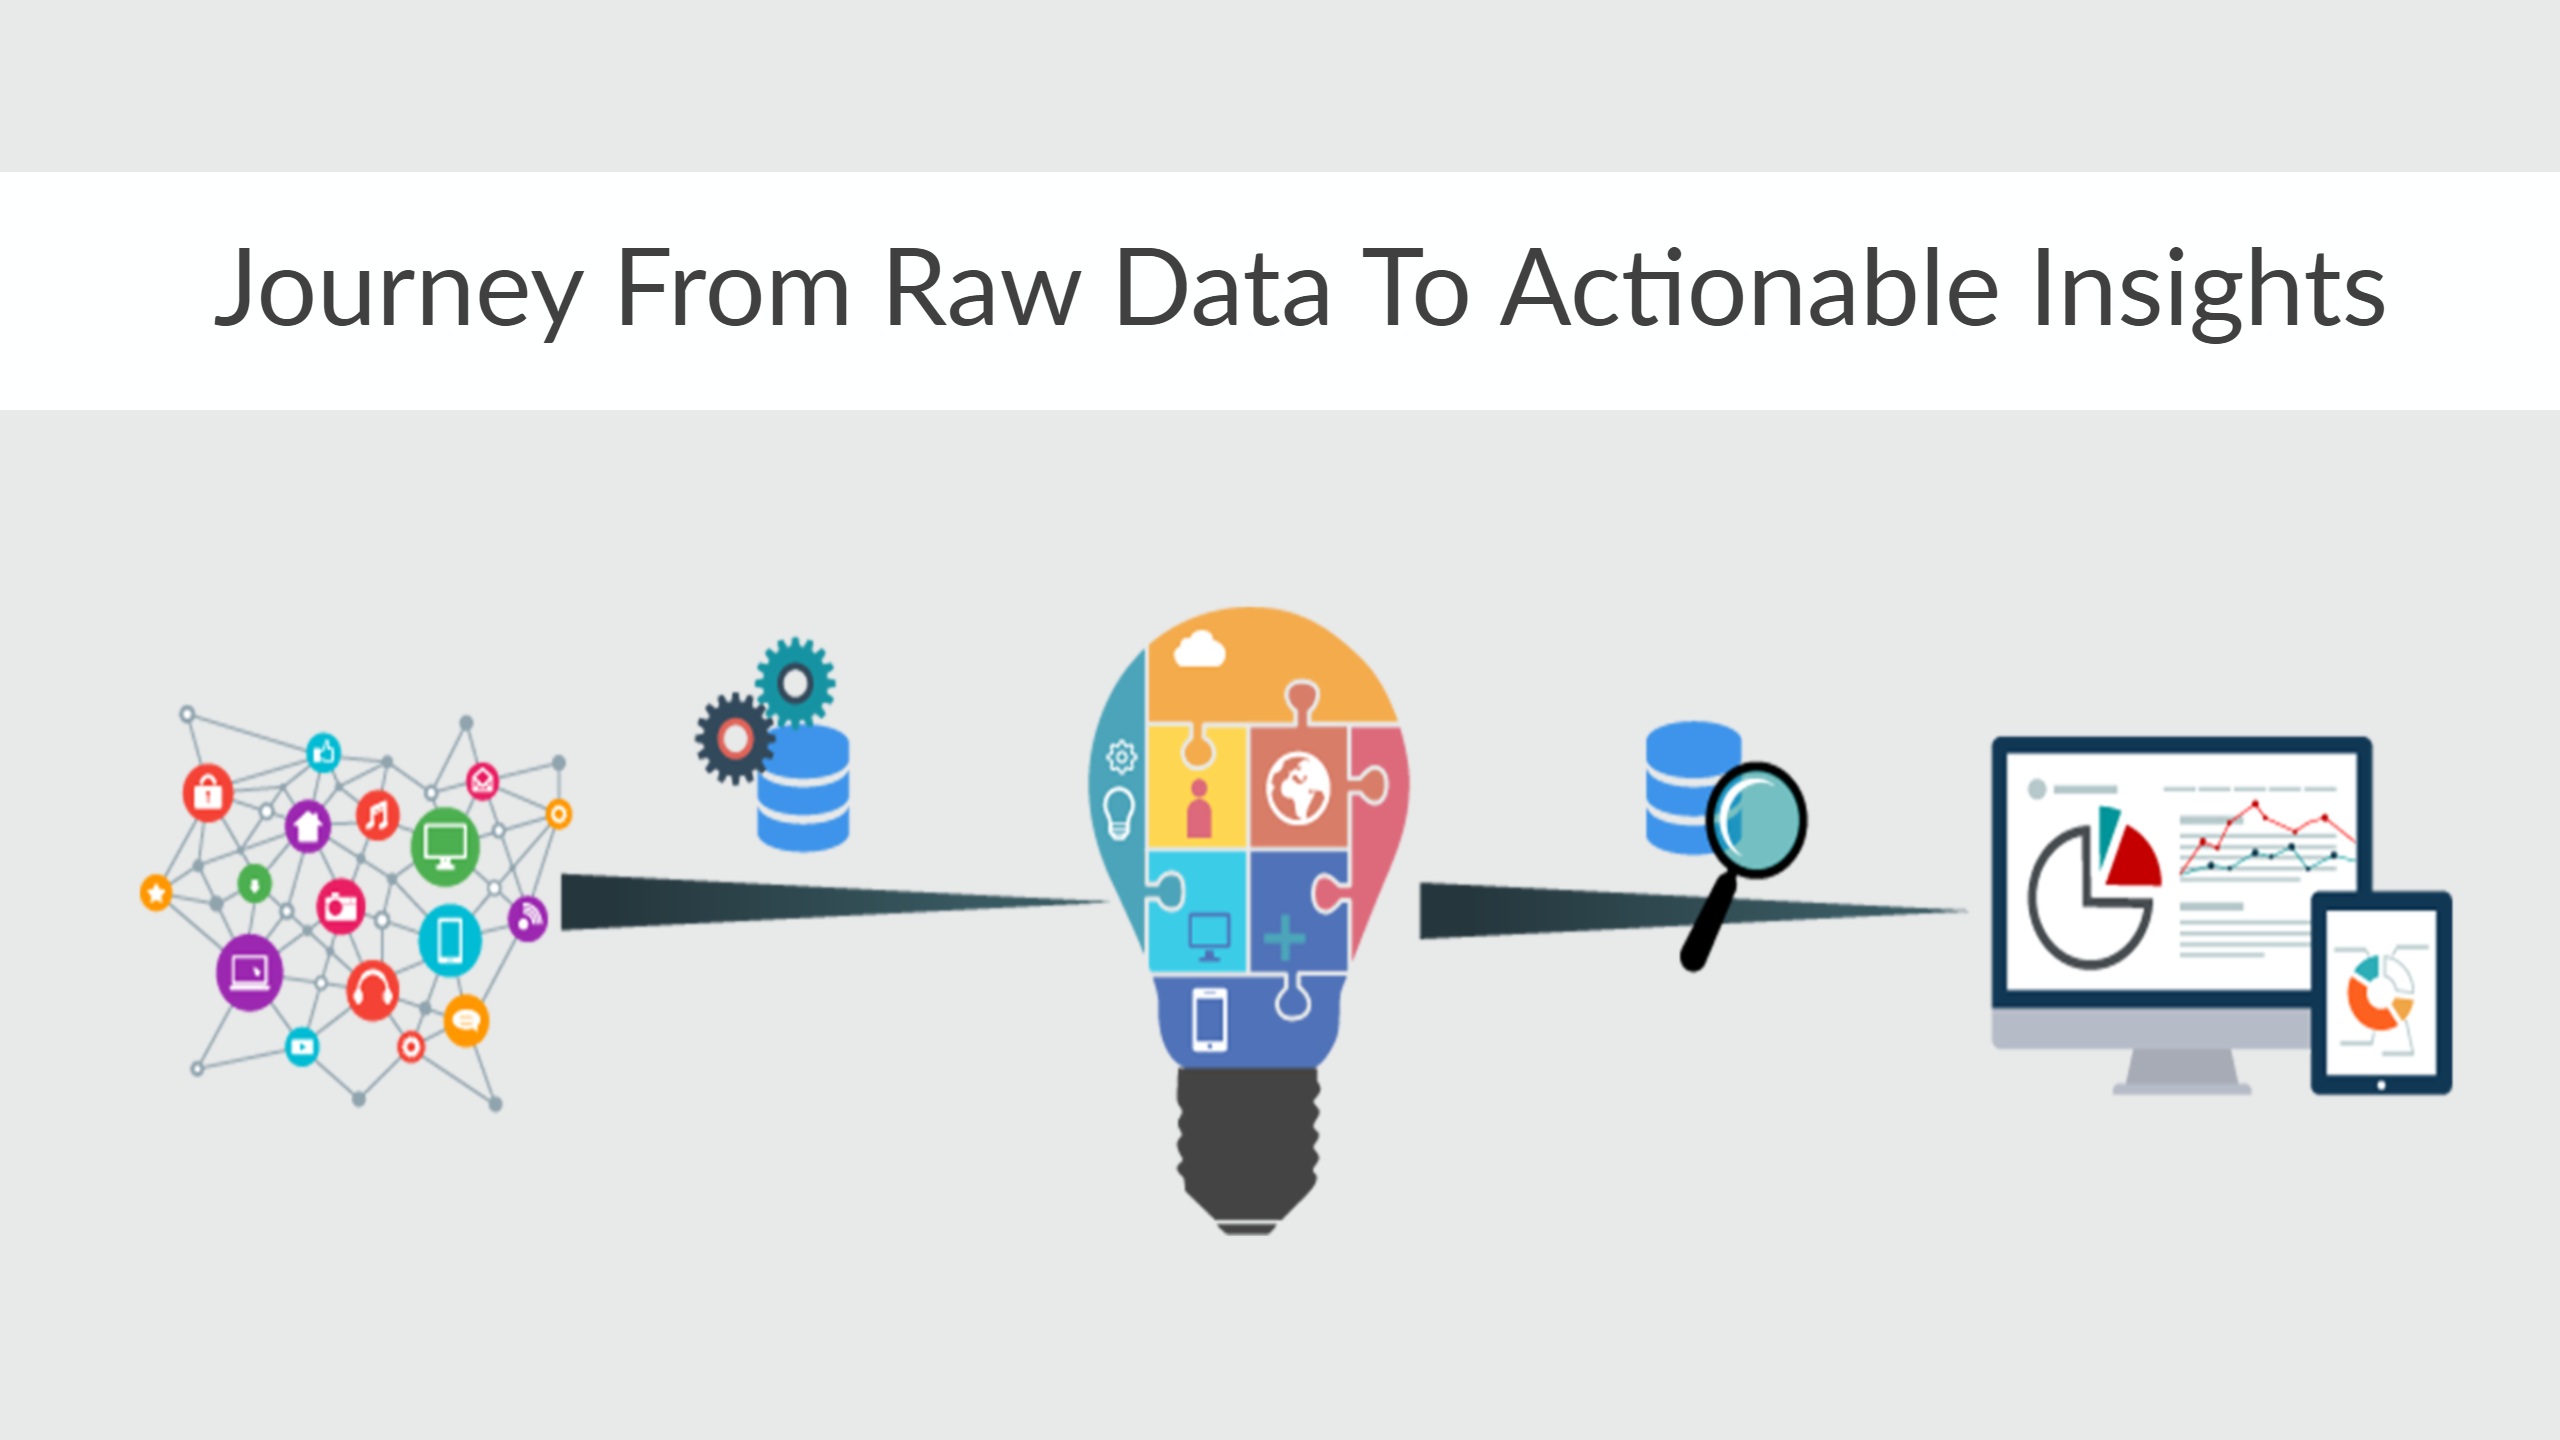 raw data là gì